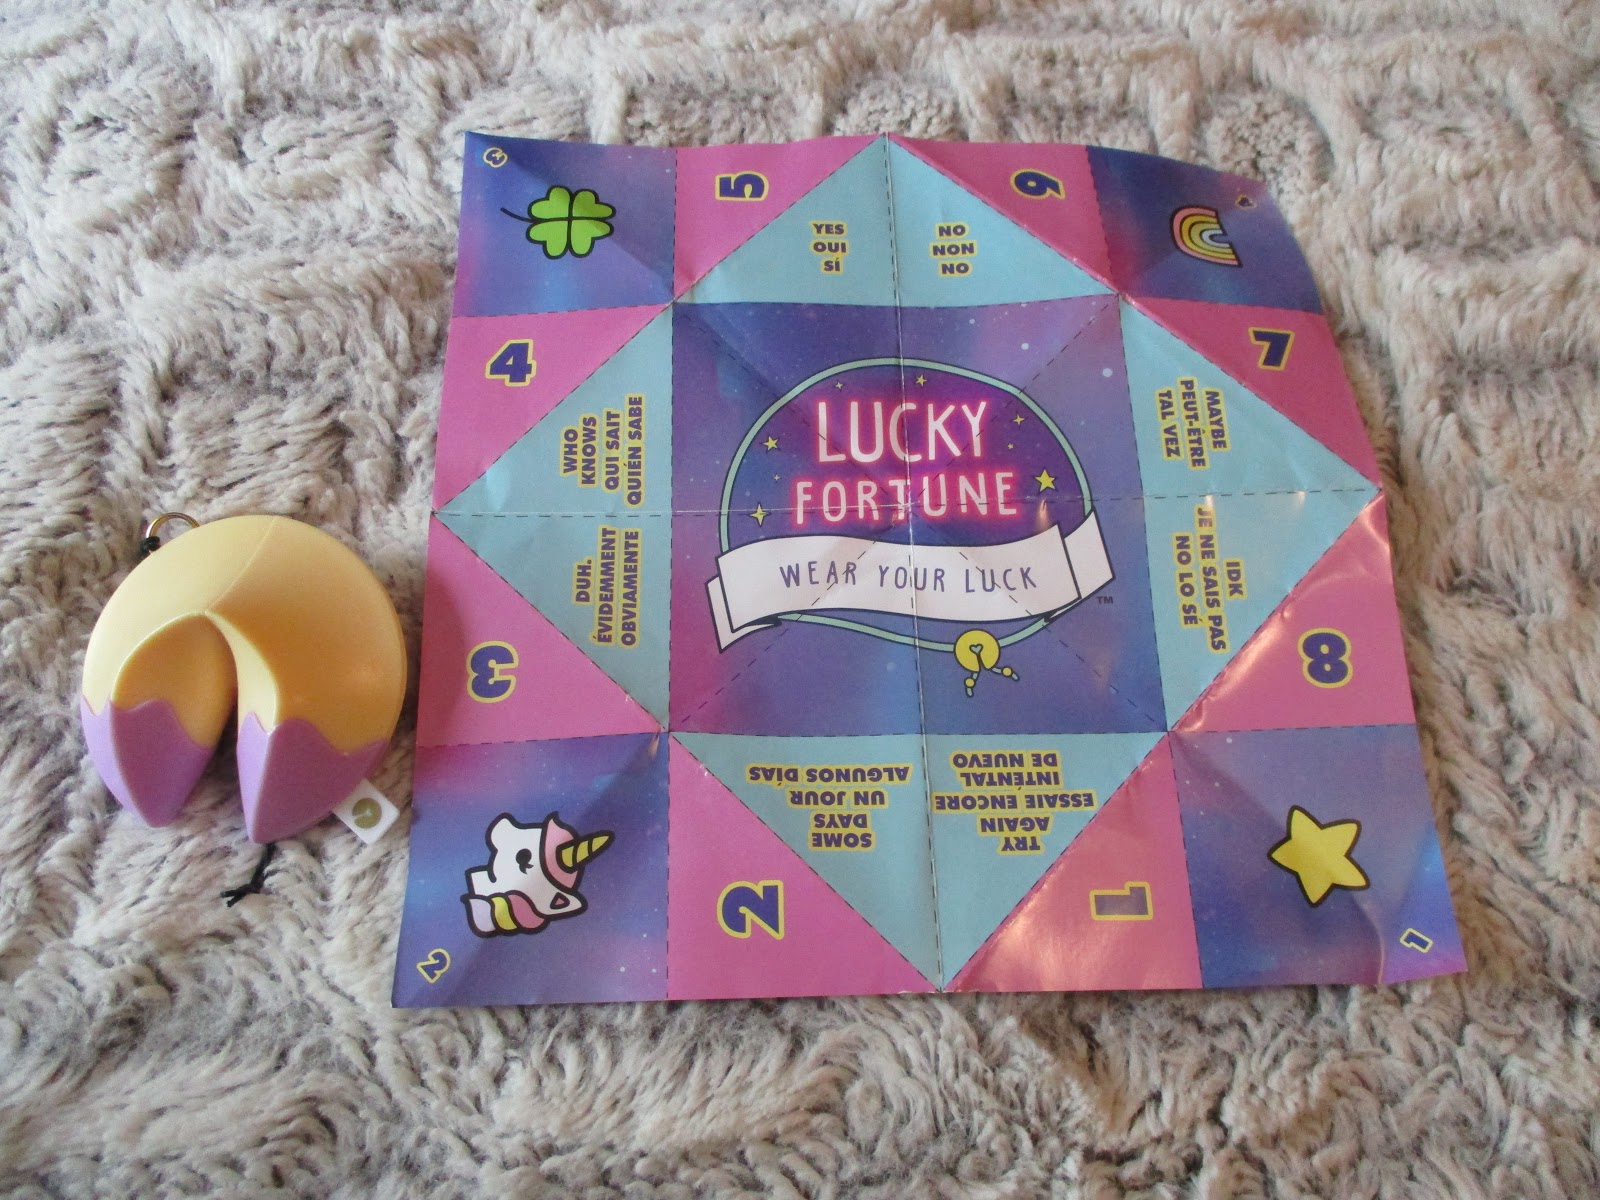 Toucan Box, kit créatif pour enfants de 3 à 8 ans - Lucky Sophie blog  famille voyage